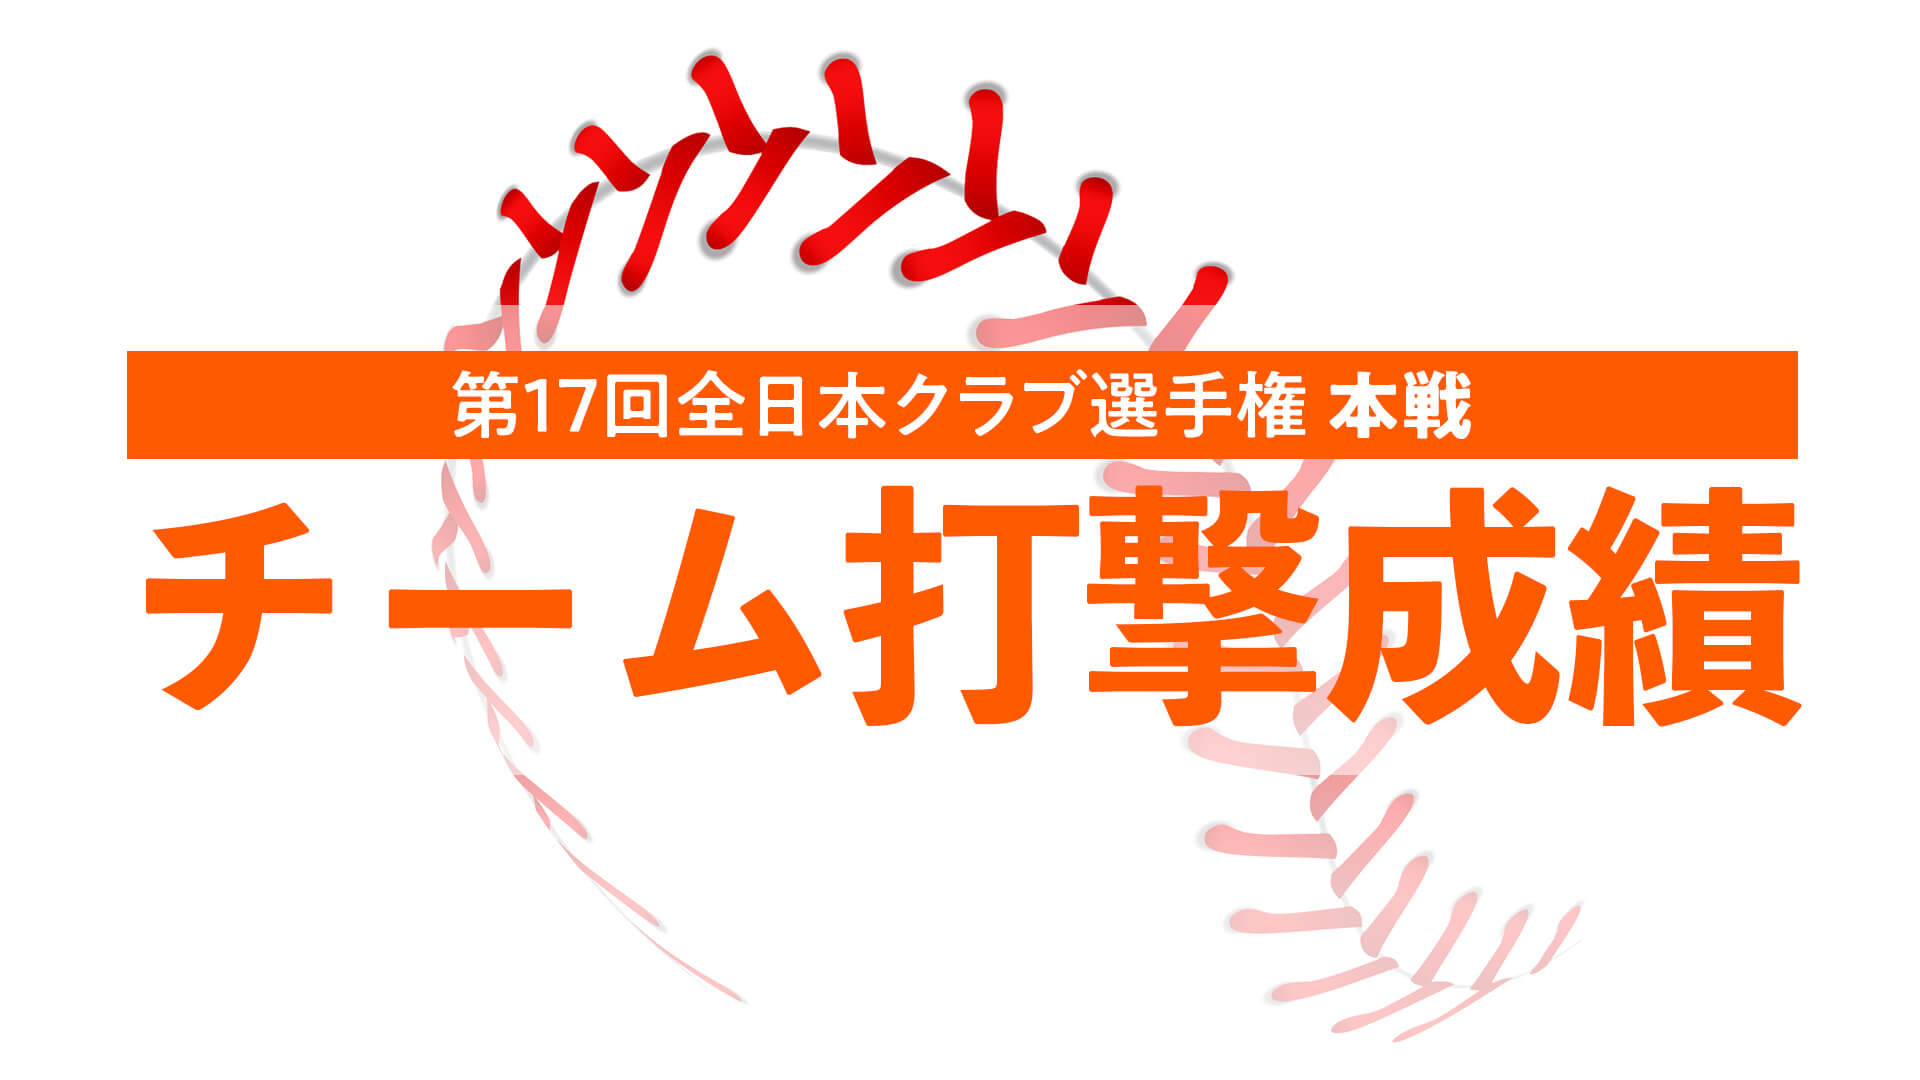 第17回全日本女子硬式クラブ野球選手権大会『チーム打撃成績』